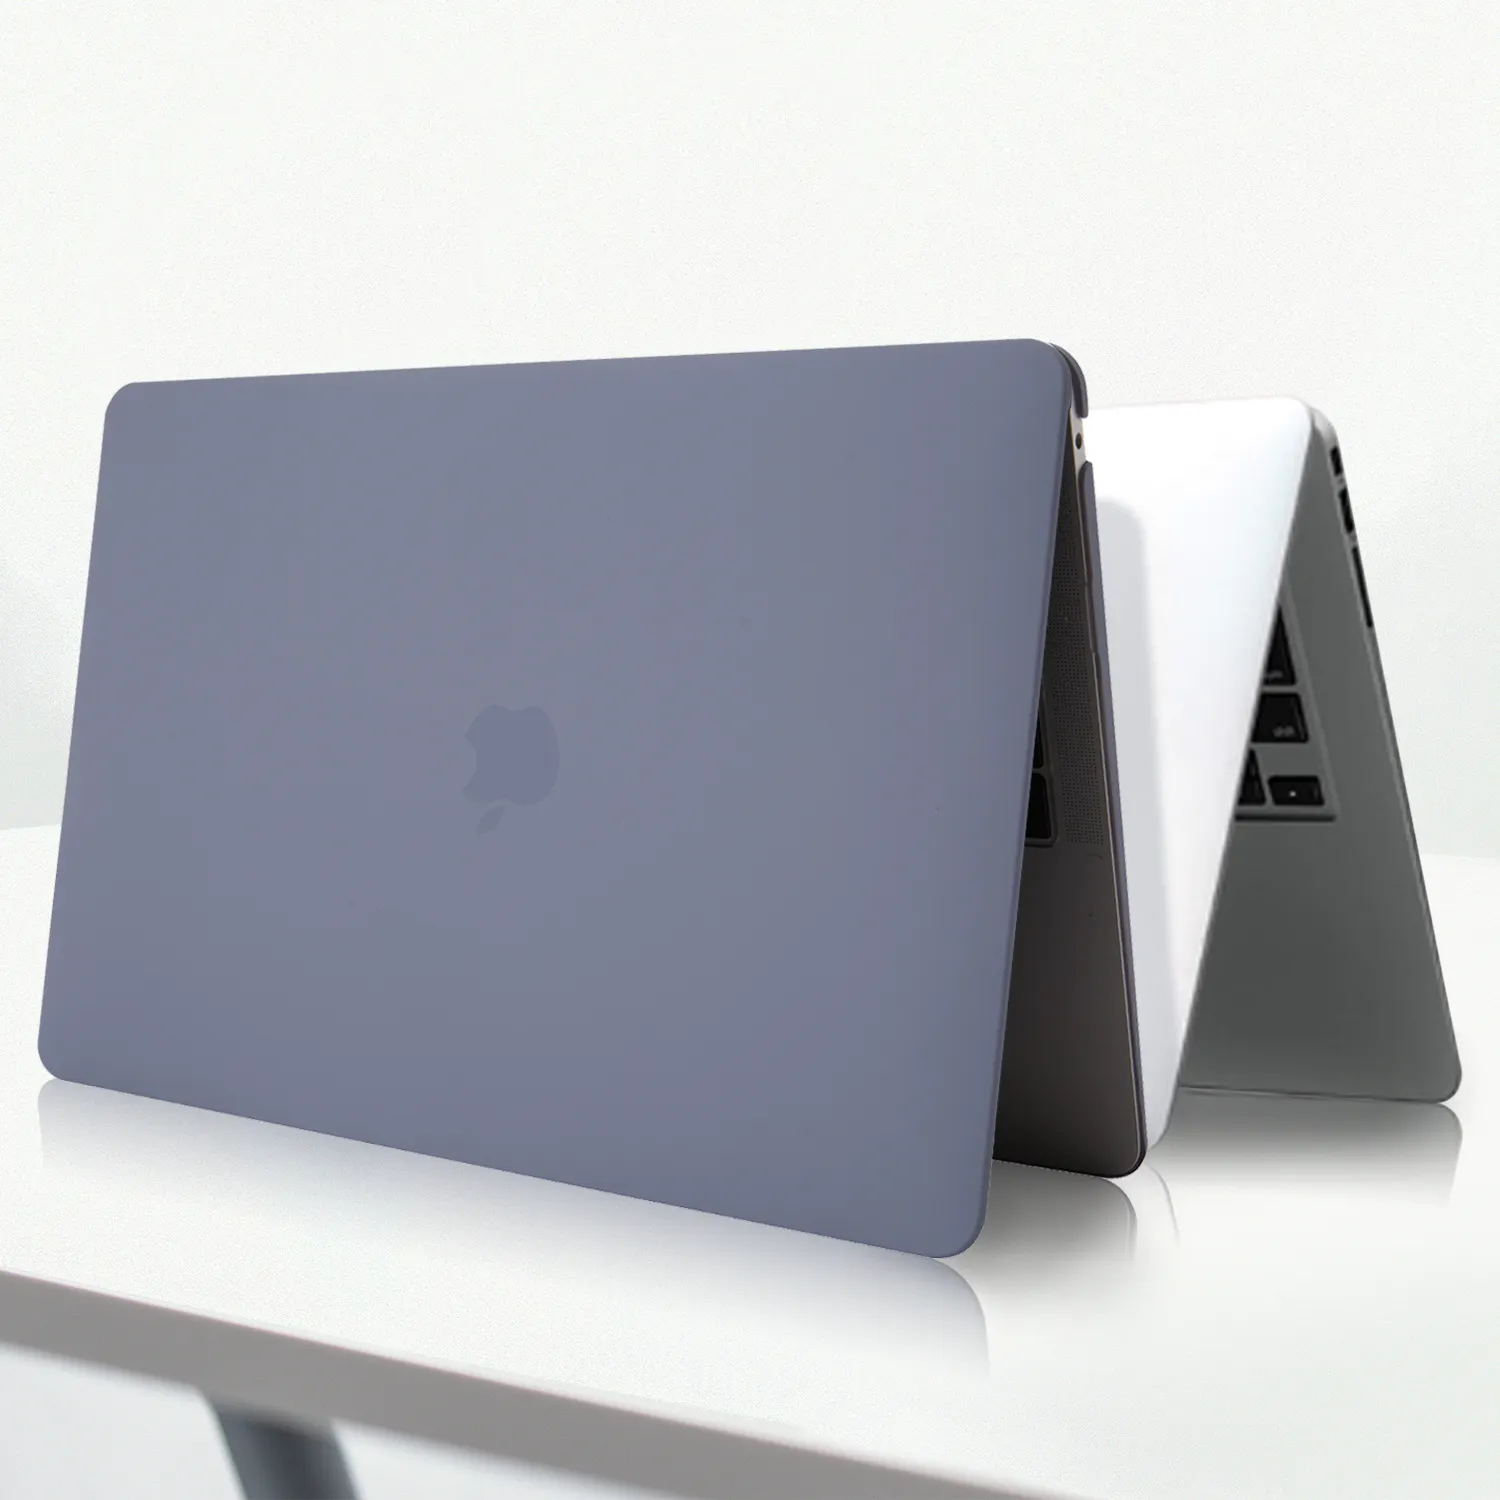 İnce mat plastik sert kabuk Laptop Case kapak için Macbook Pro 11.6/12/13.3/15.4/16 inç hava Retina